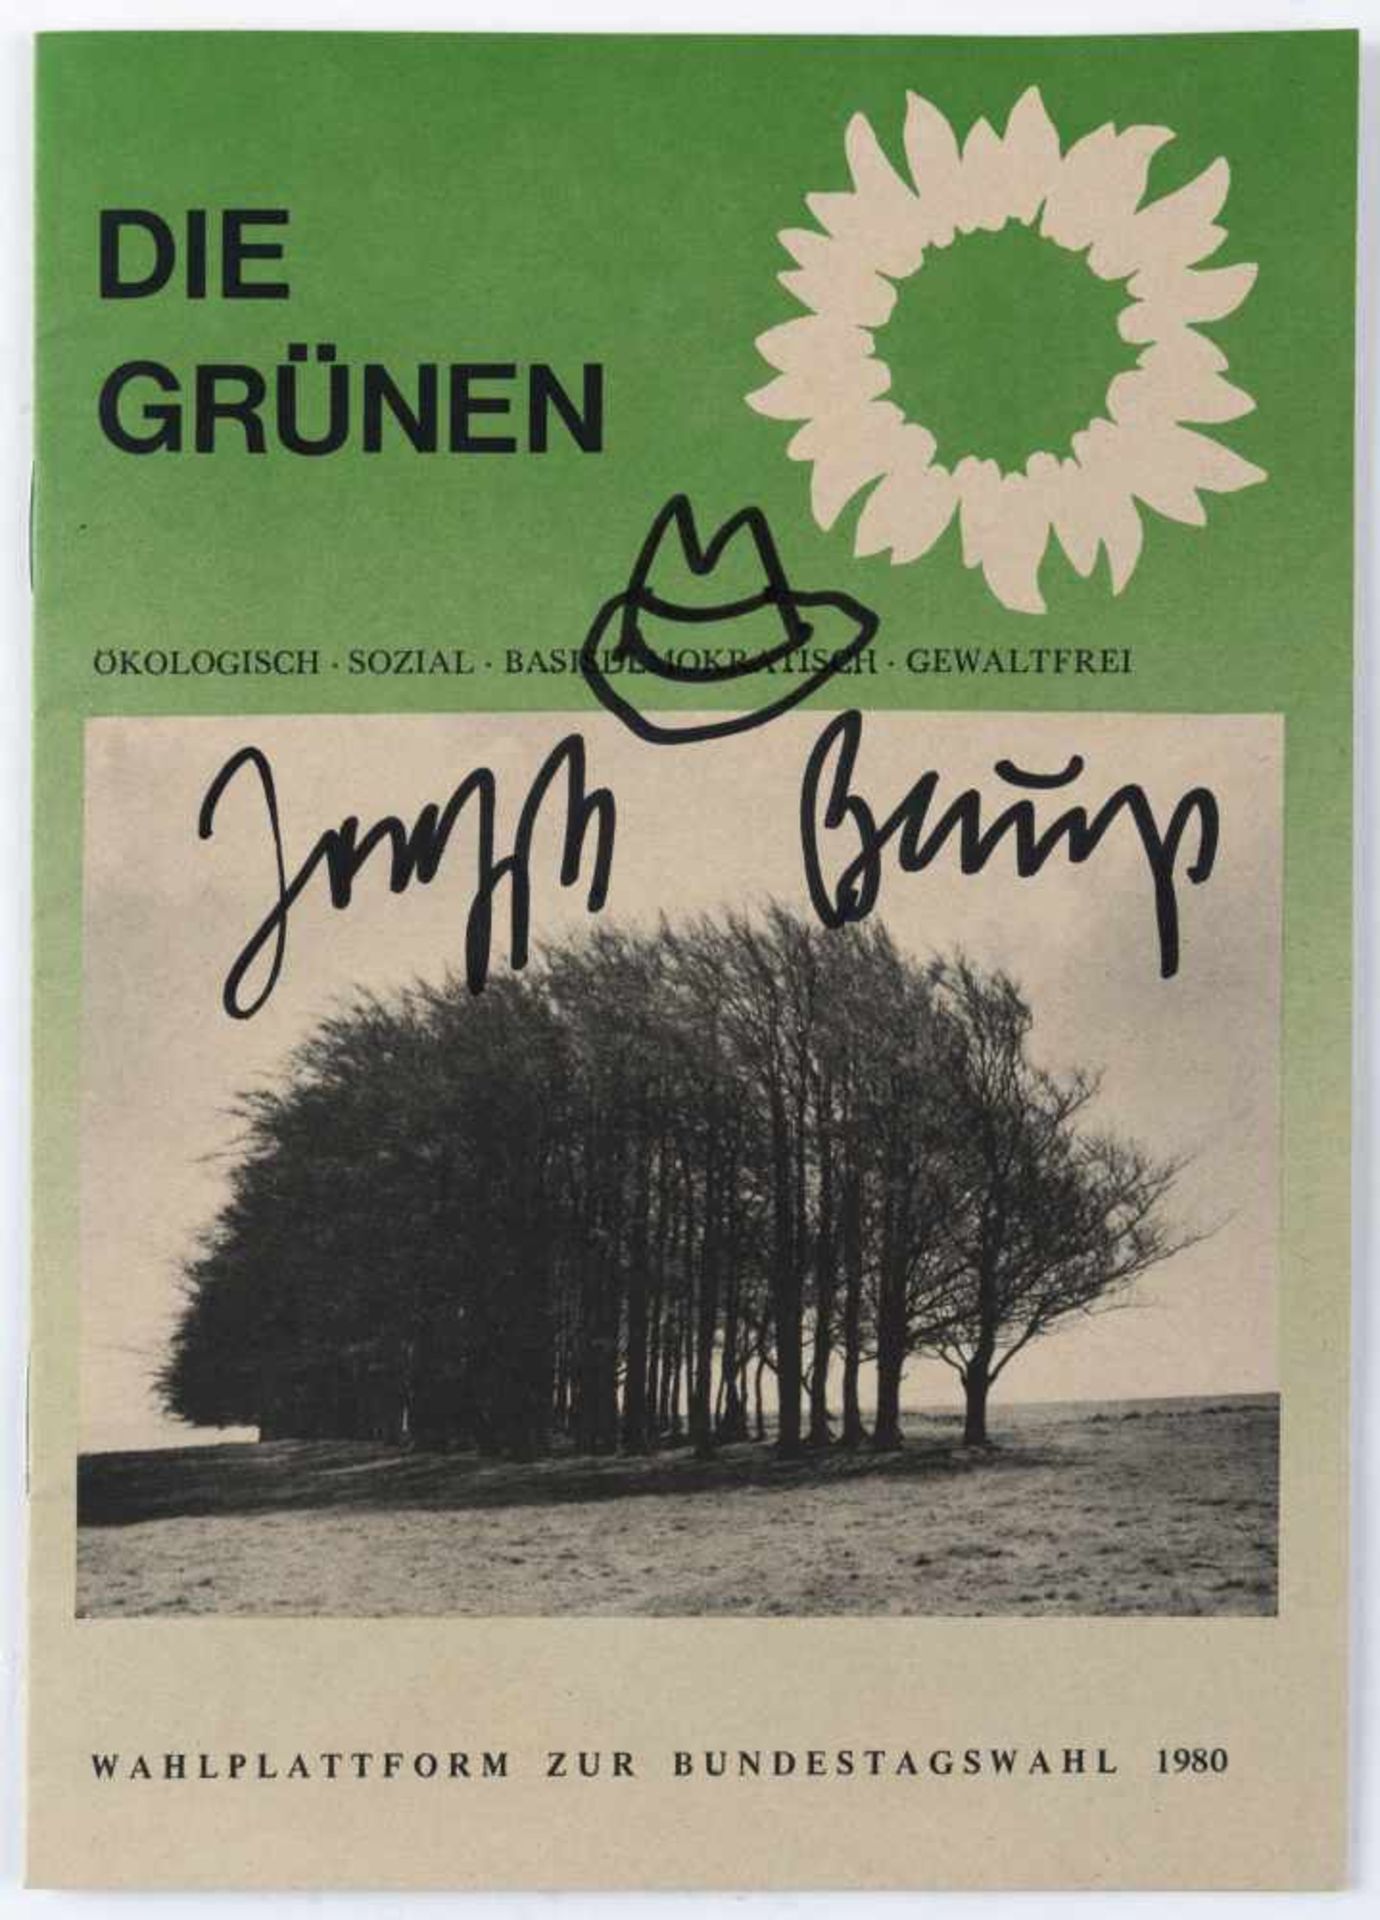 Joseph Beuys (Krefeld 1921-1986 Düsseldorf) 'Hutzeichnung' auf dem Cover 'Die Grünen - Wahlplattform